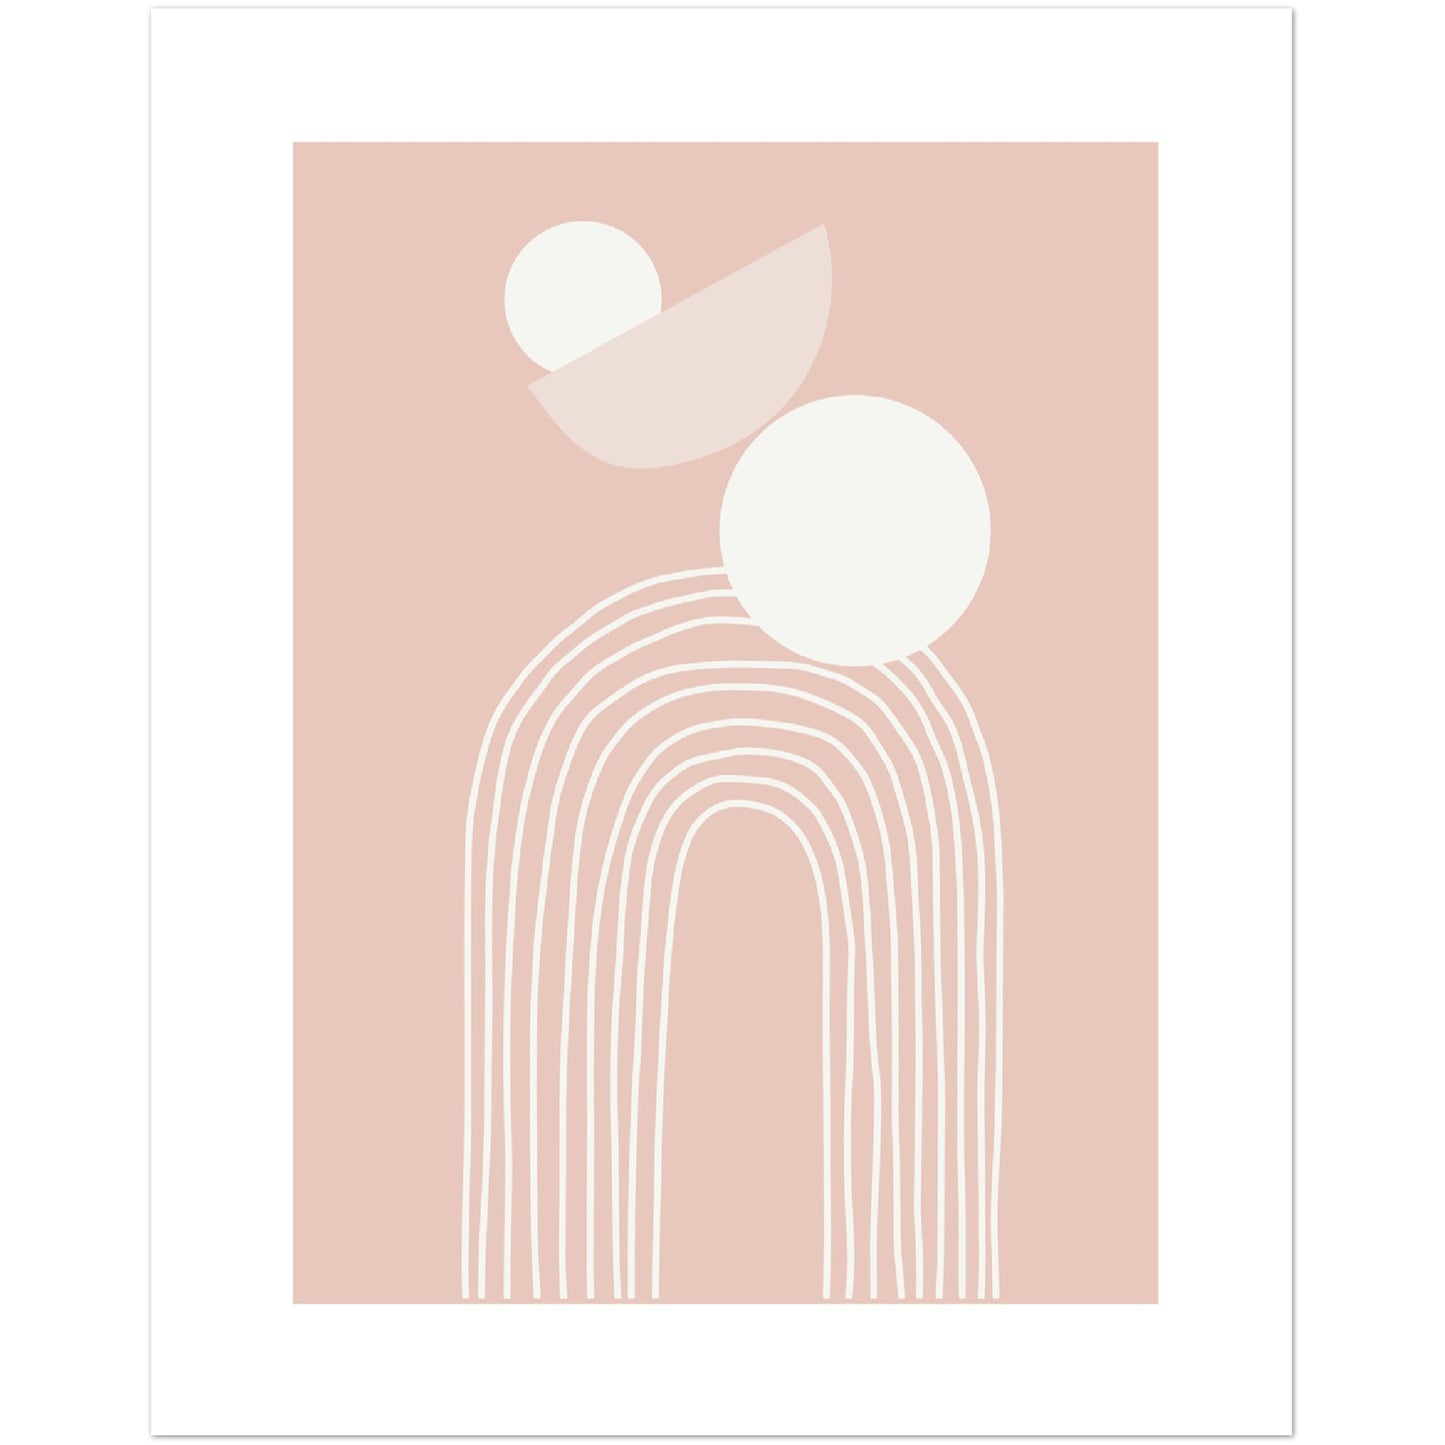 Modern Abstract Shapes Print, No1